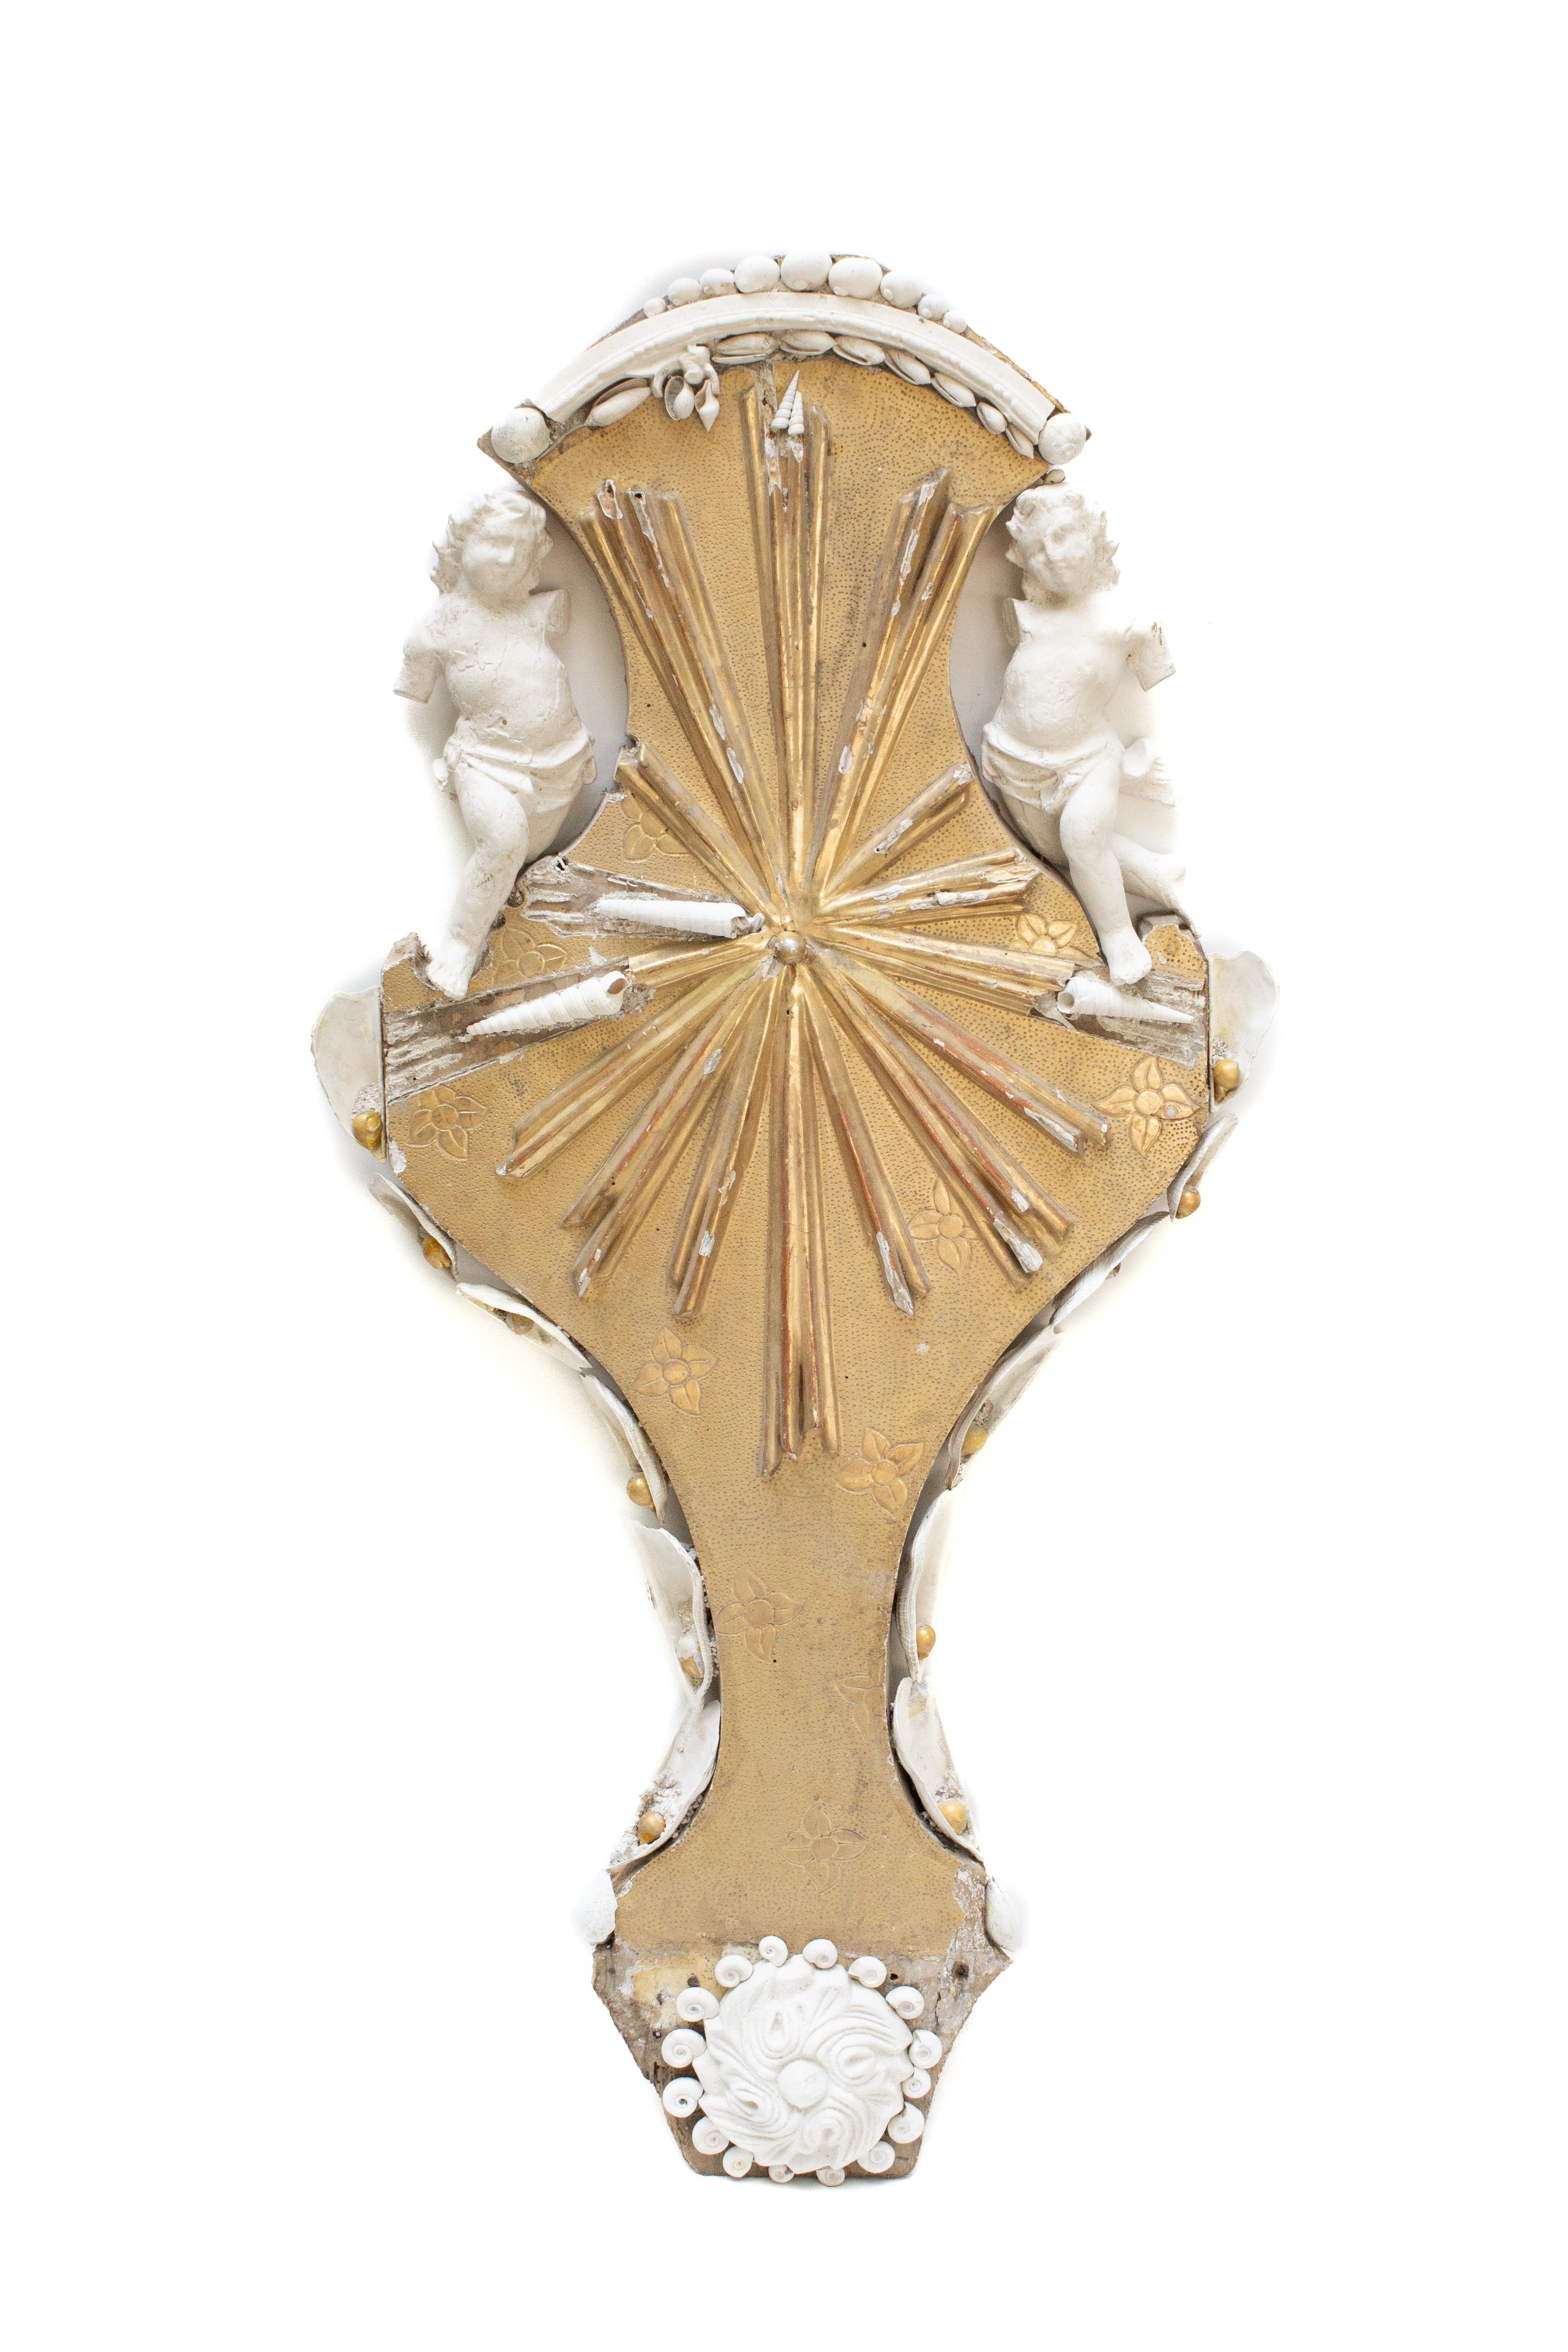 Élément architectural italien du XVIIIe siècle sculpté à la main à la feuille d'or, avec une paire d'anges en plâtre moulés à la main, une rosette en plâtre et une moulure de corniche en plâtre. Il est orné de coquillages fossiles blancs coordonnés